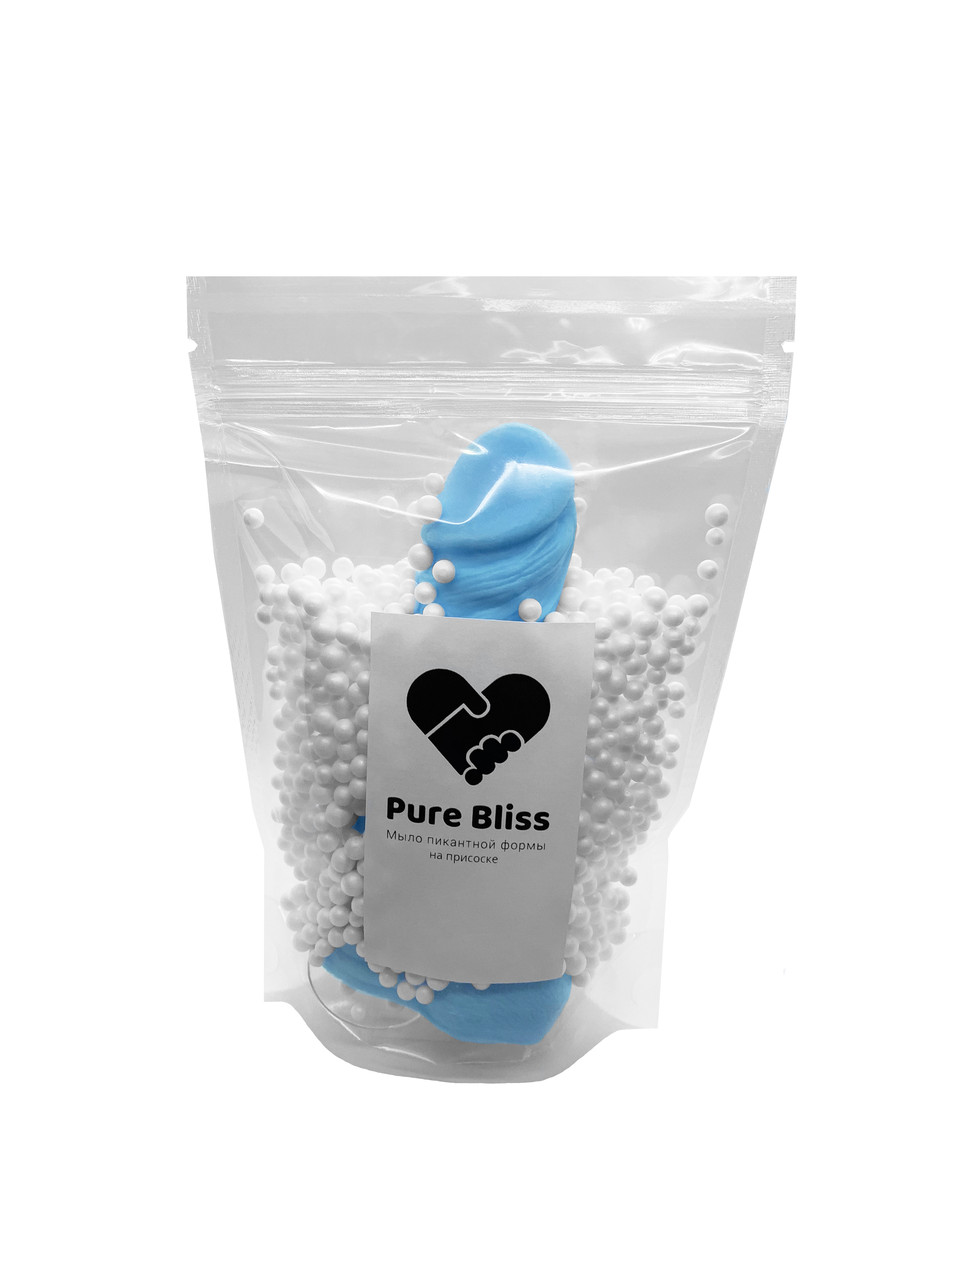 

Мыло пикантной формы Pure Bliss size M -blue оригинальный подарок прикольный